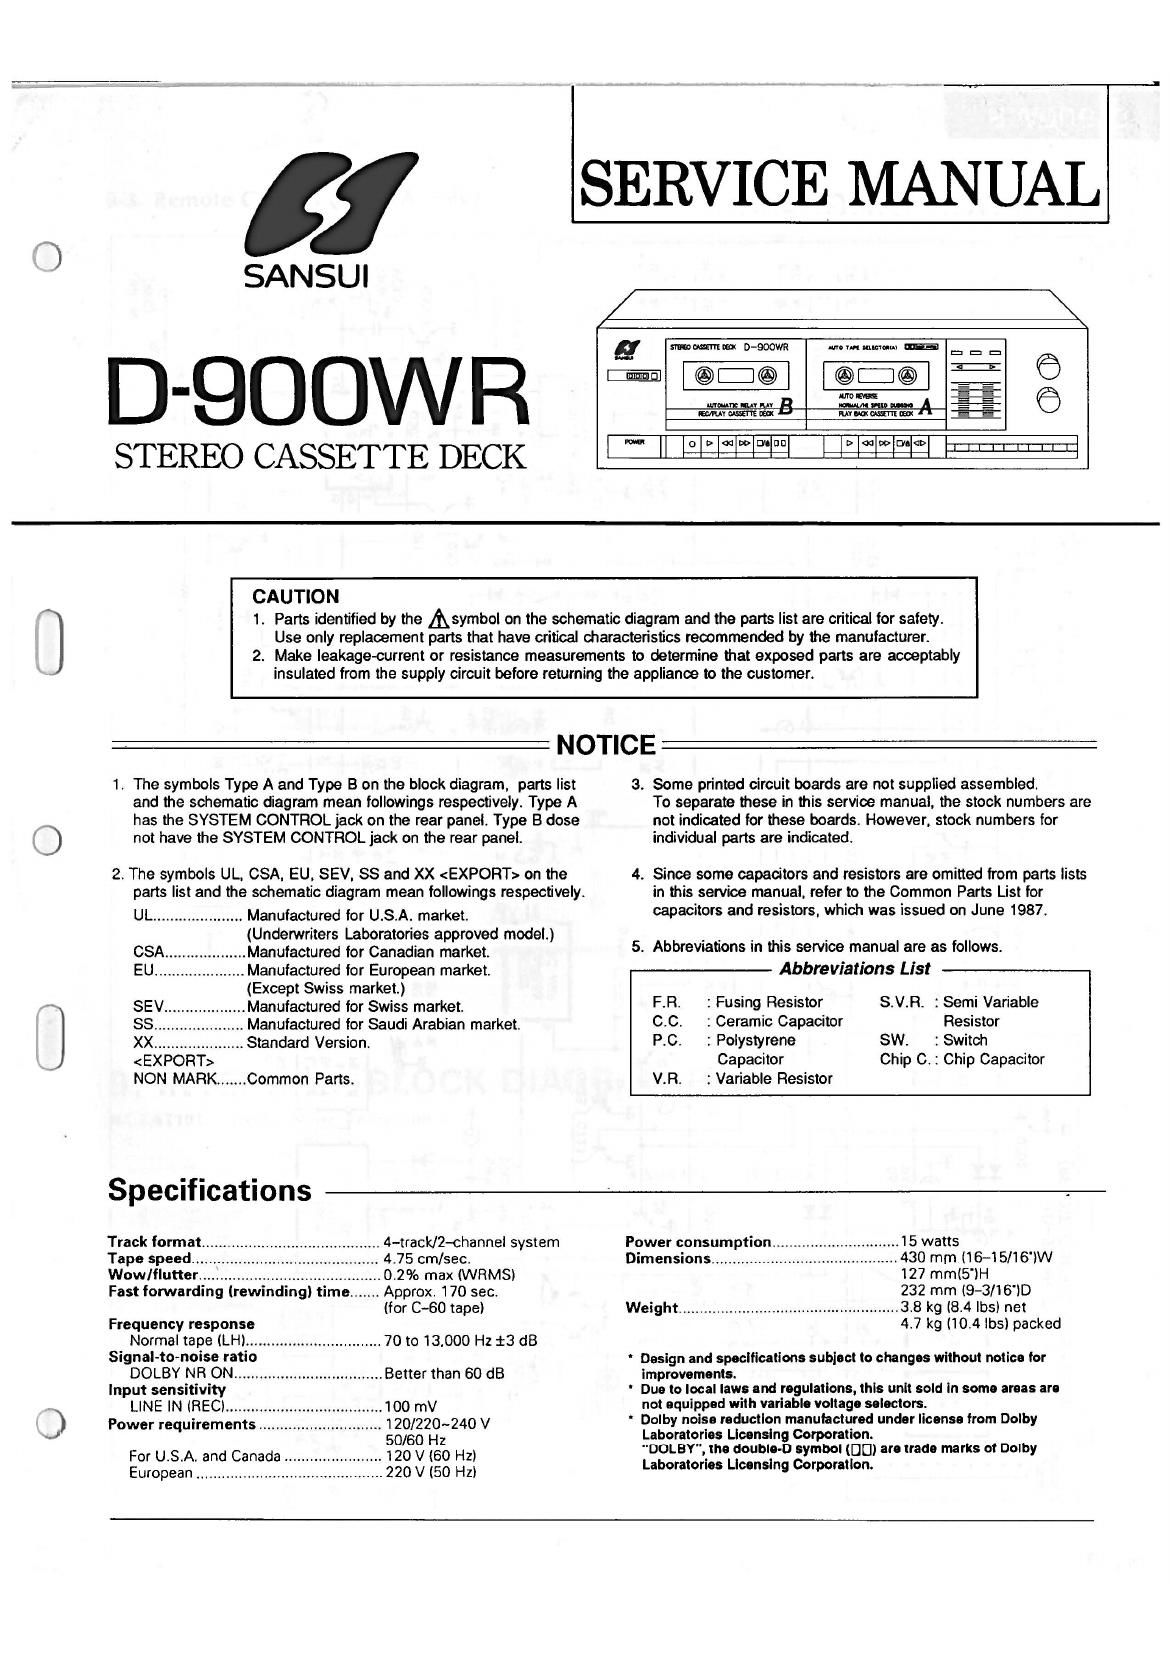 Sansui D 900 WR Service Manual